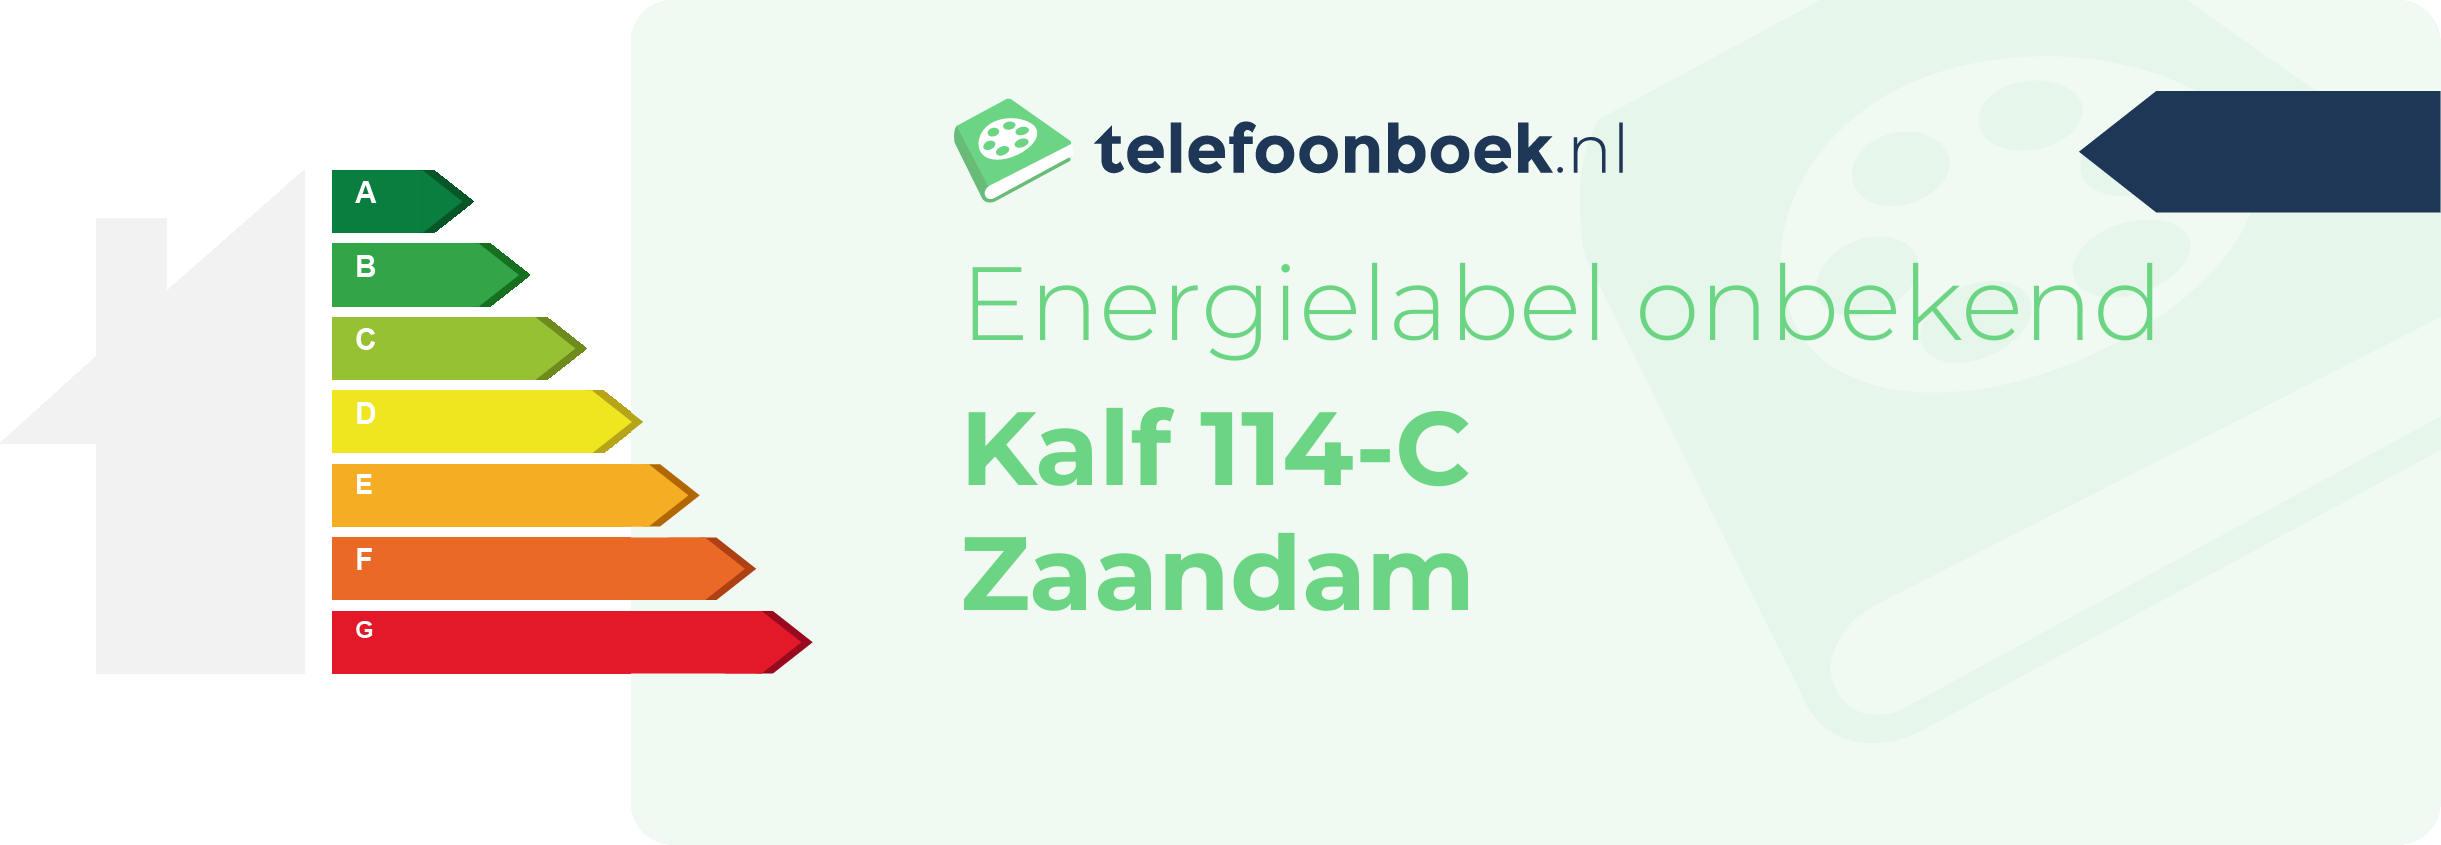 Energielabel Kalf 114-C Zaandam